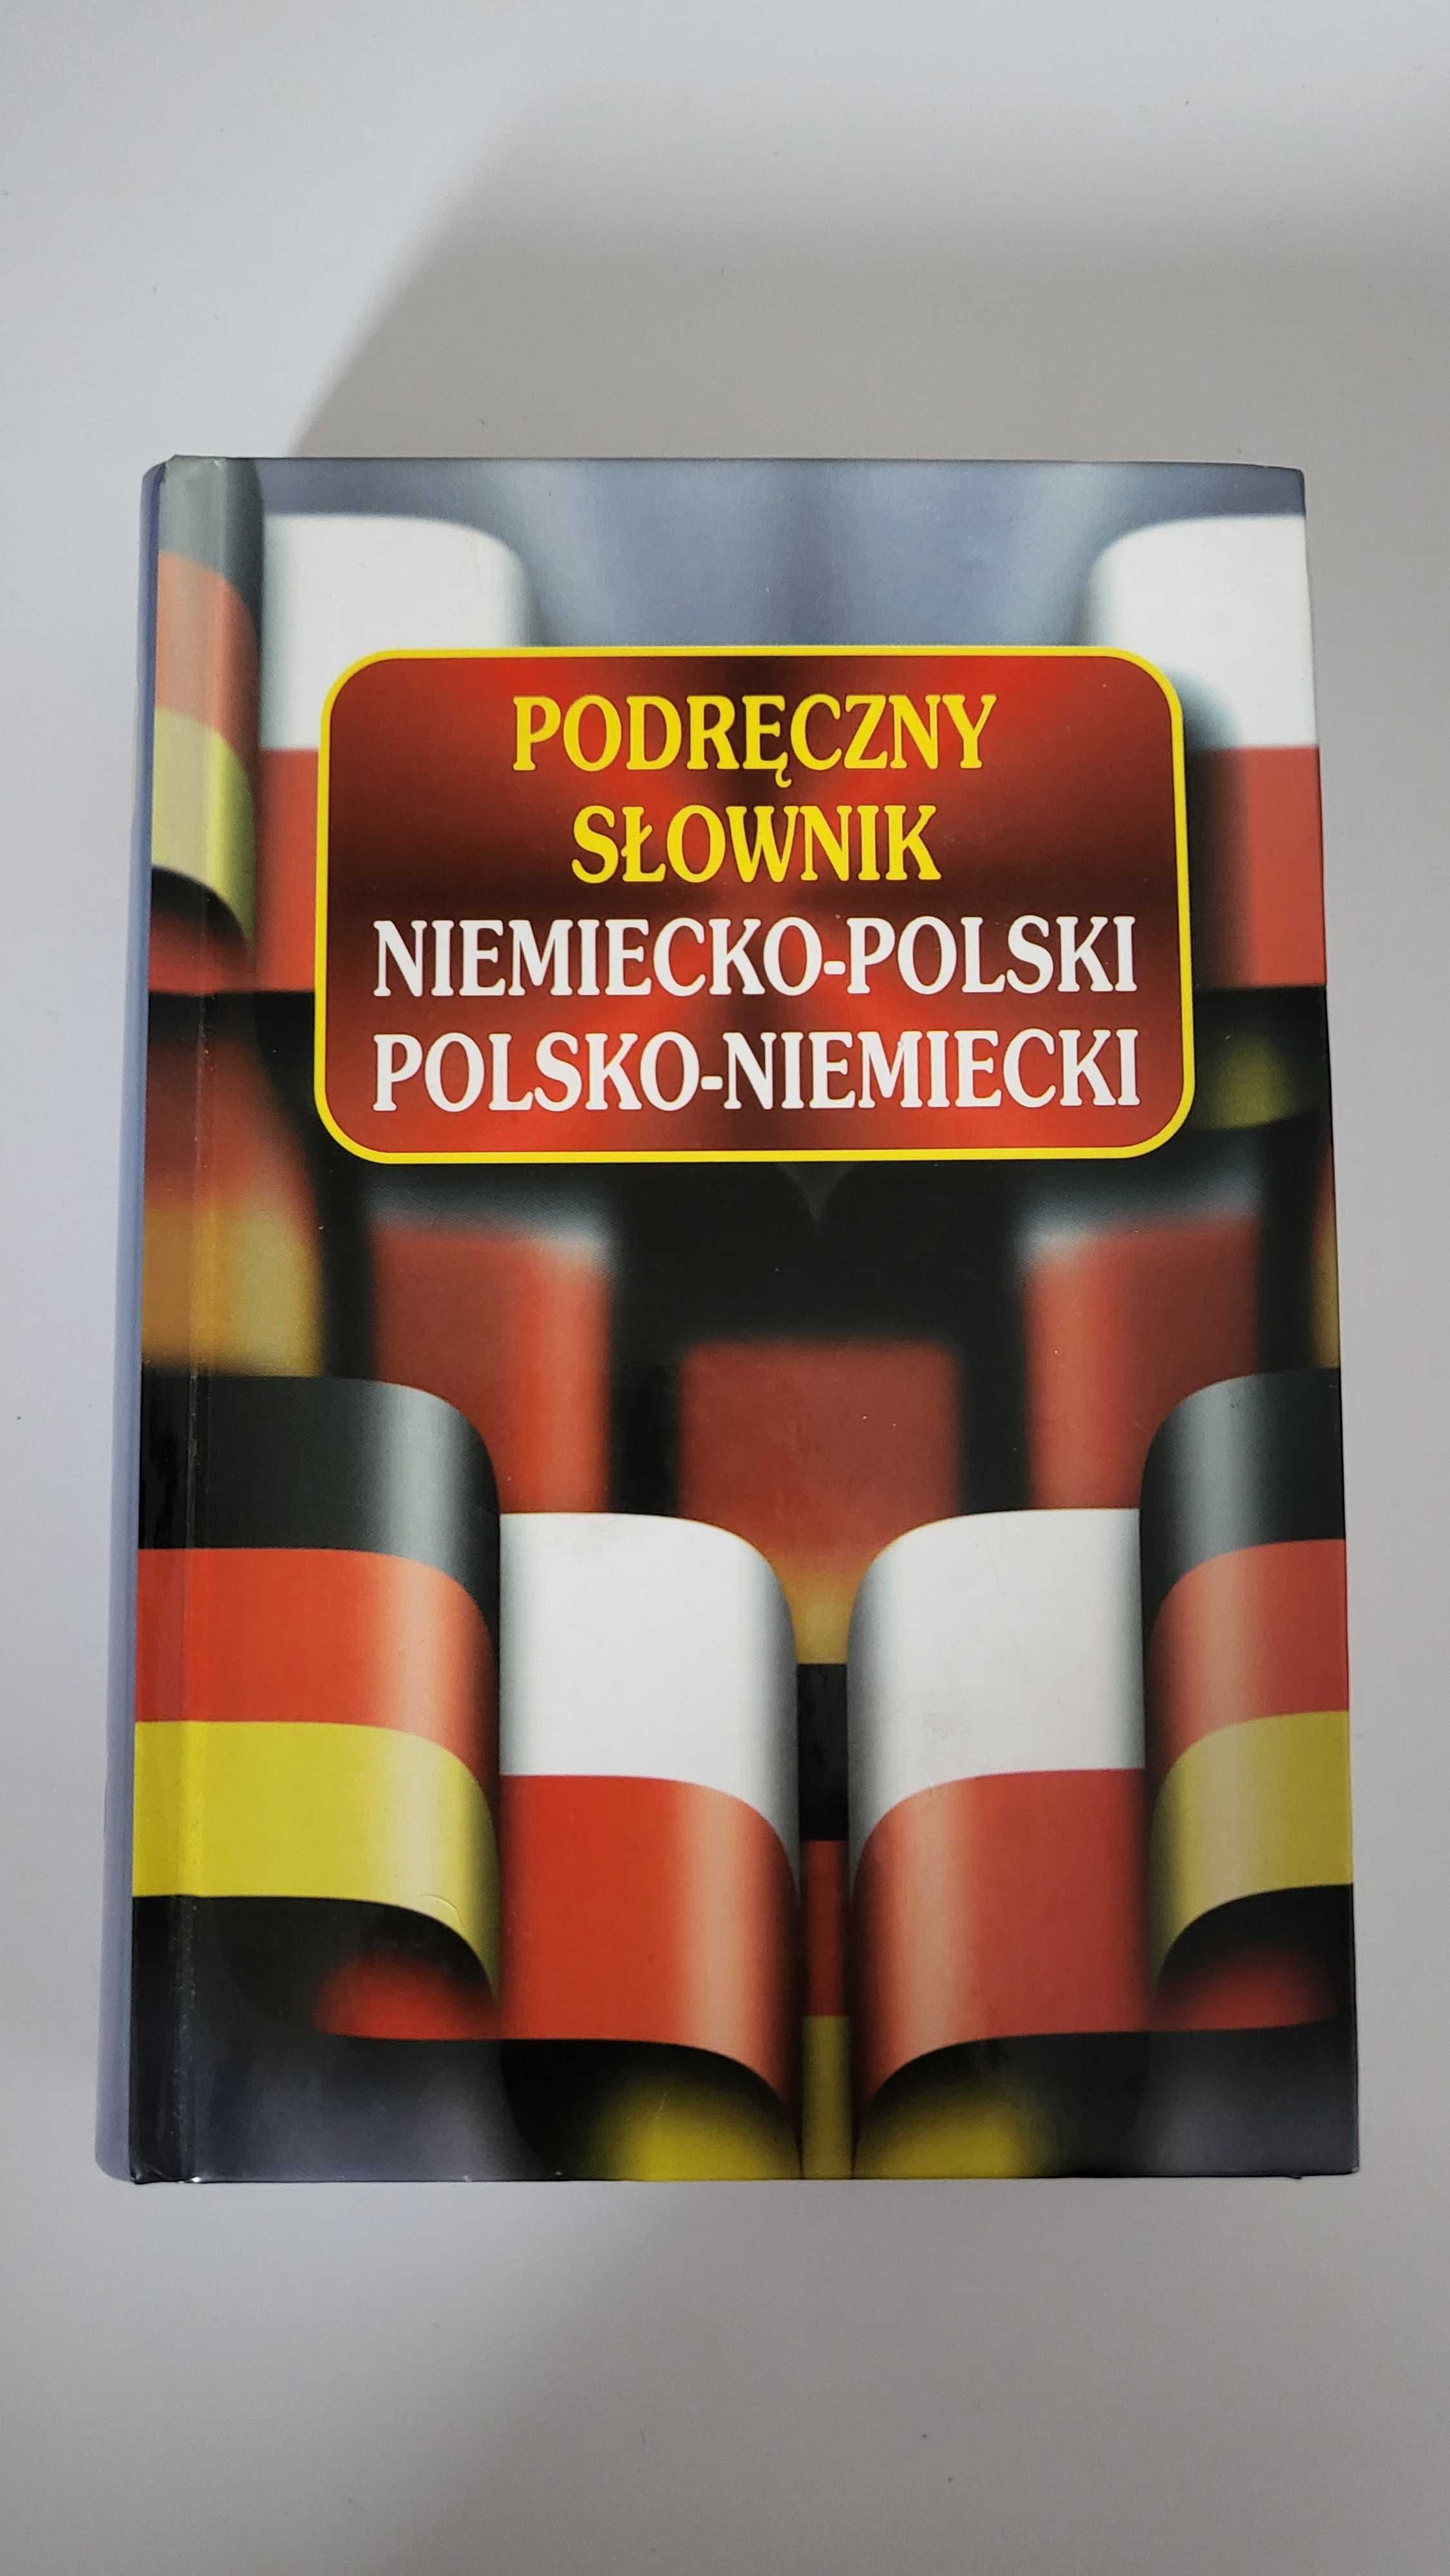 Podręczny słownik niemiecko-polski i polsko-niemiecki